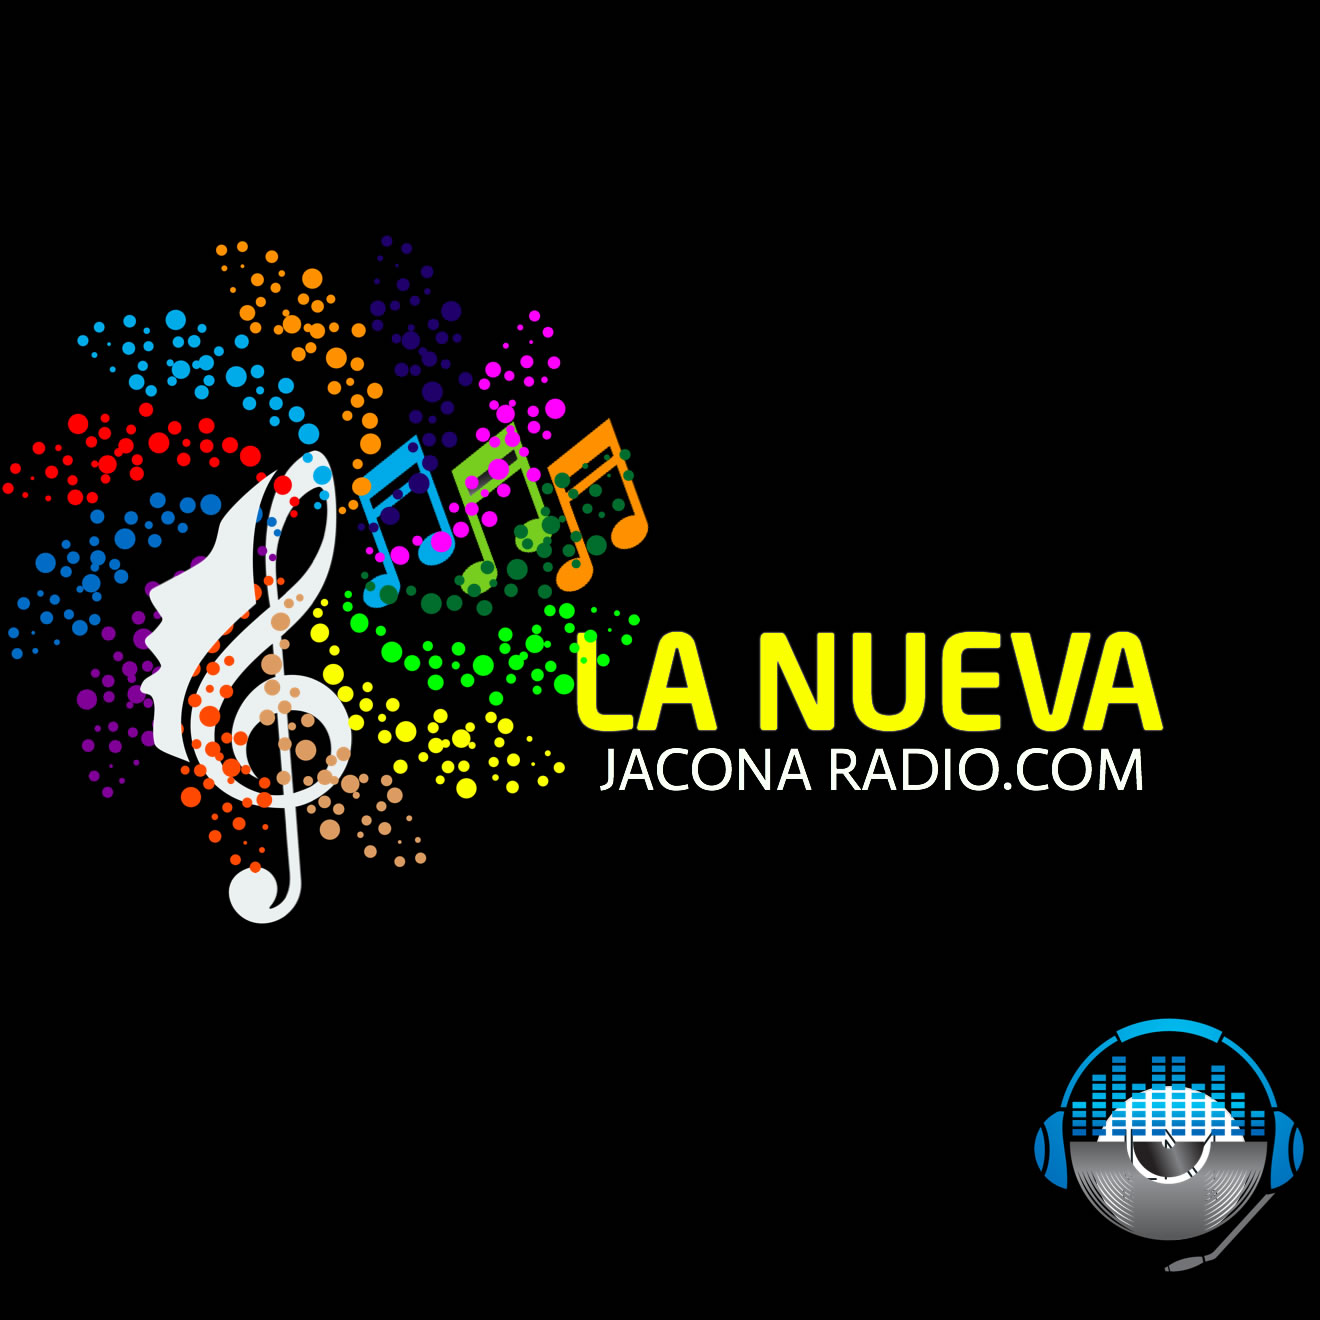 Jacona Radio